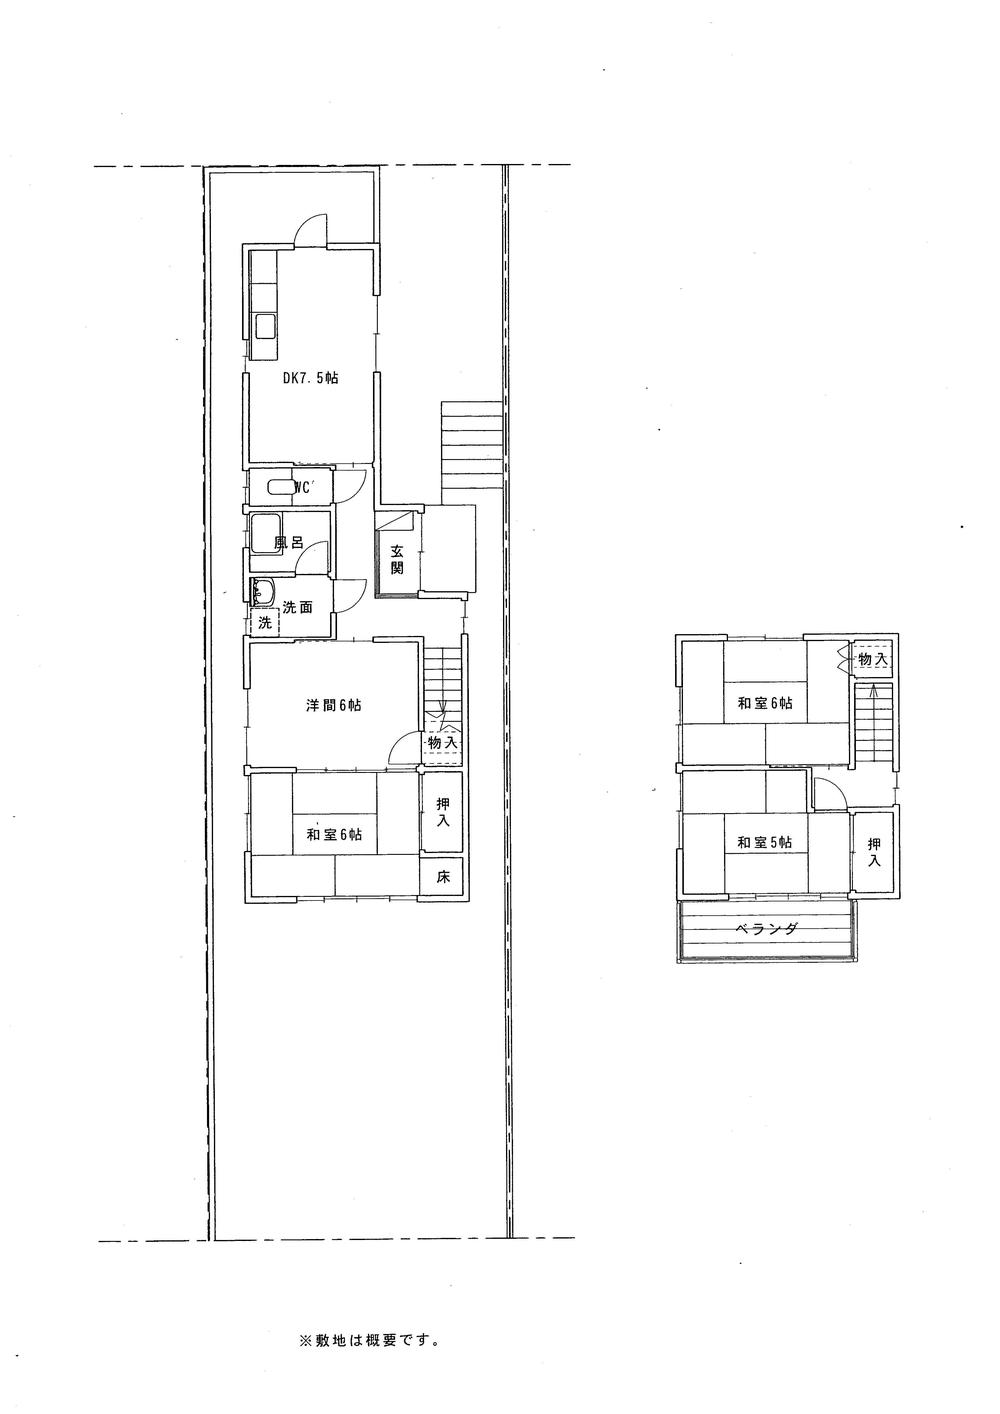 Floor plan. 13.5 million yen, 4DK, Land area 143.08 sq m , Building area 75.46 sq m